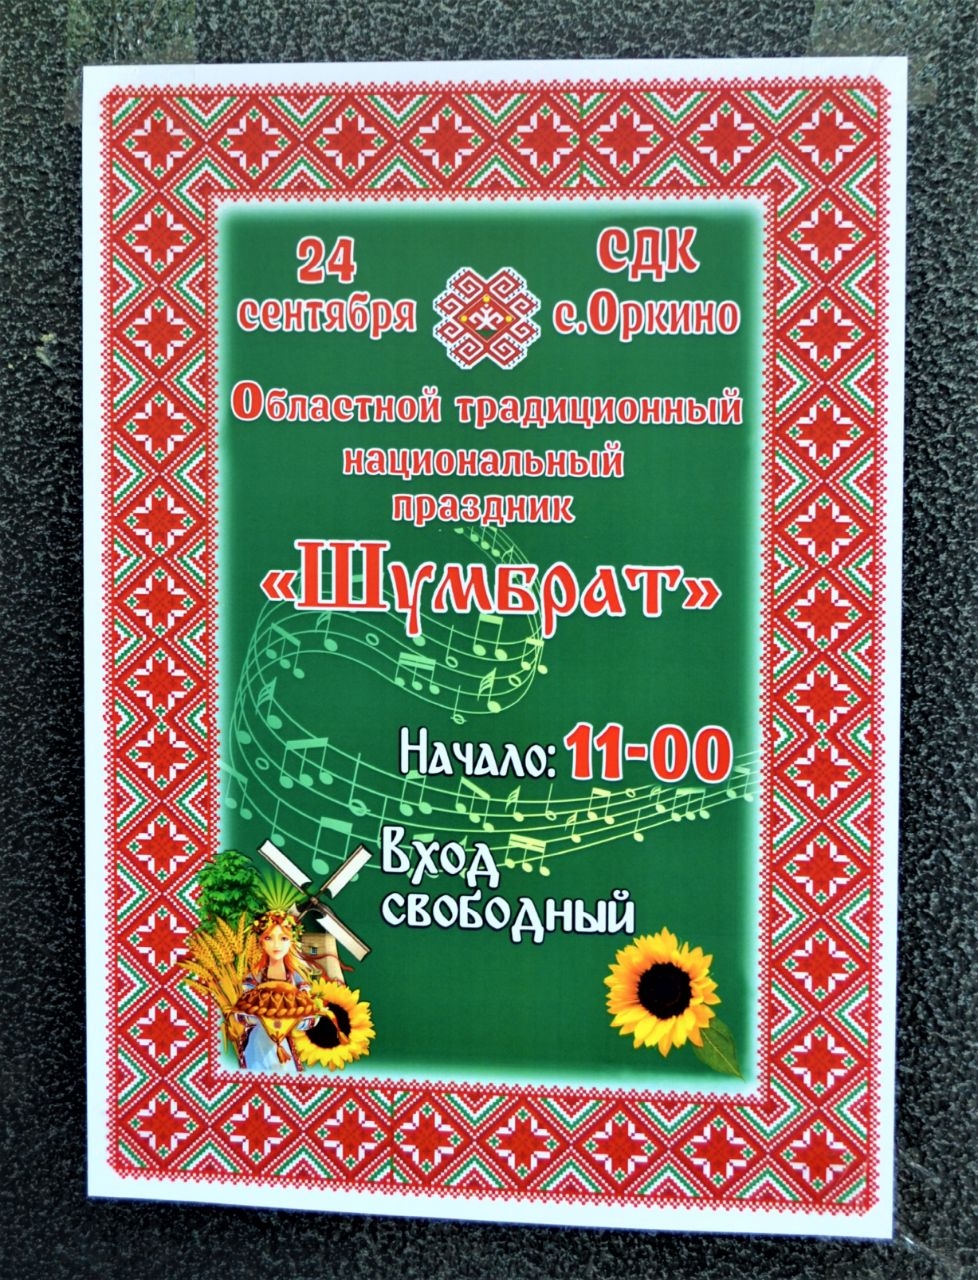 Мордовский праздник Шумбрат на Саратовской земле Оркино, Россия